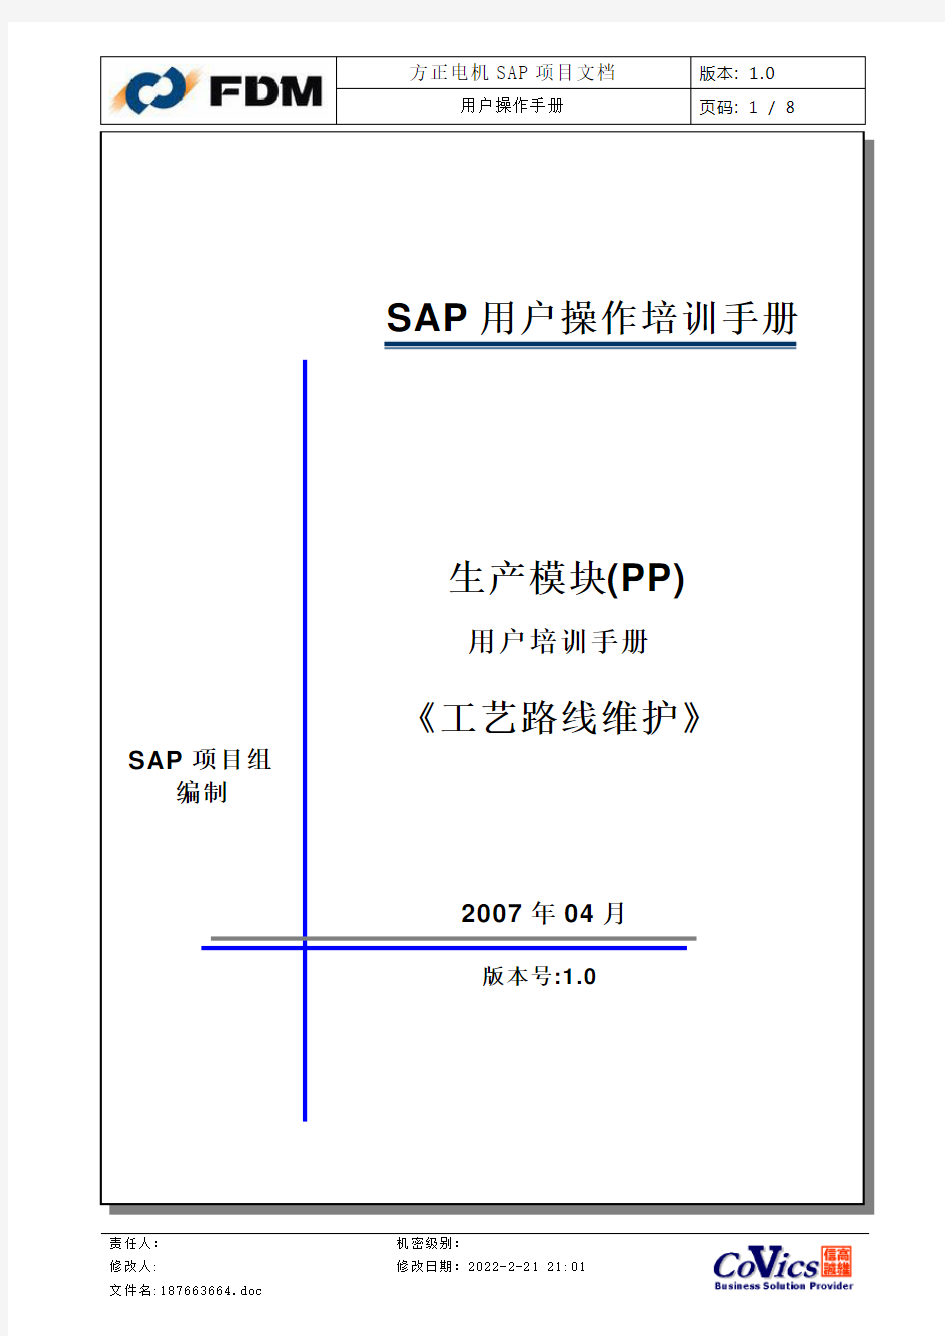 sap系统PP用户操作手册——工艺路线CA01V100427